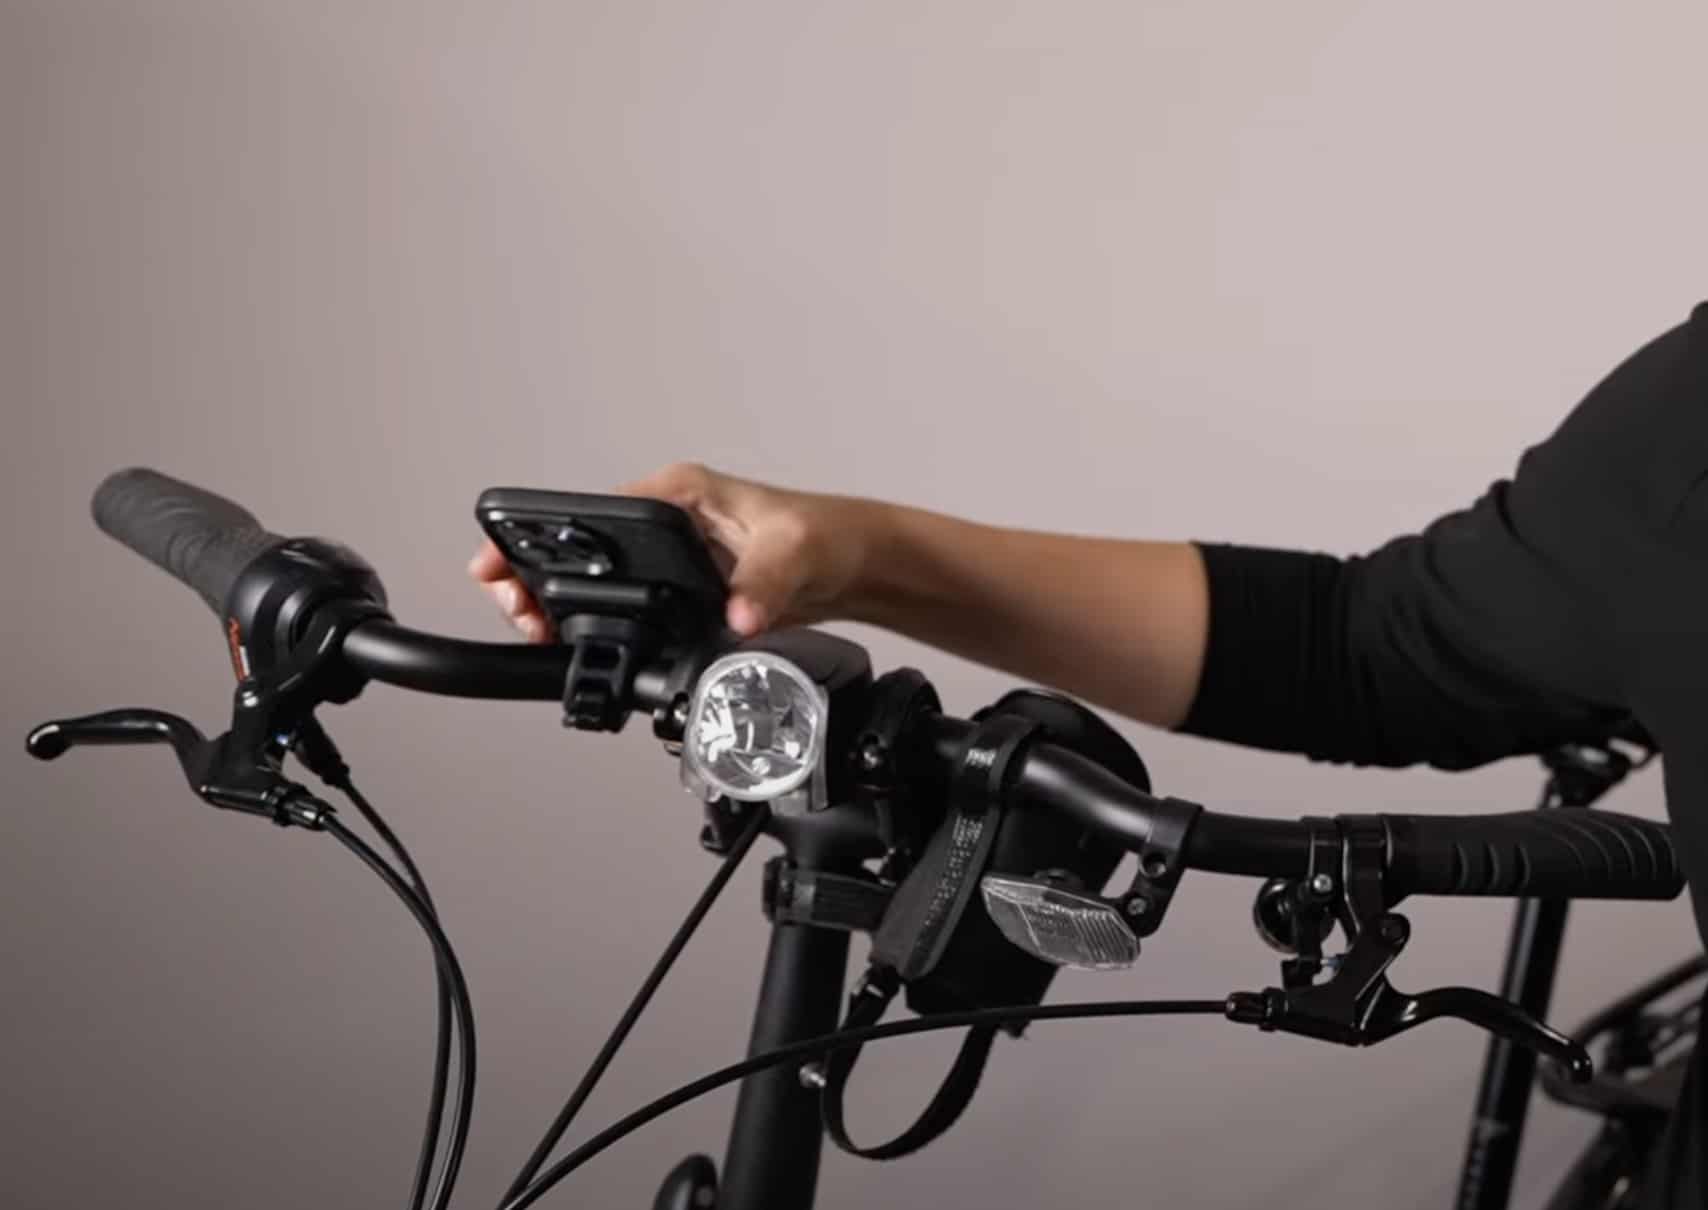 The 5 Best Bike Phone Mounts and Holders - Bike Shop Girl